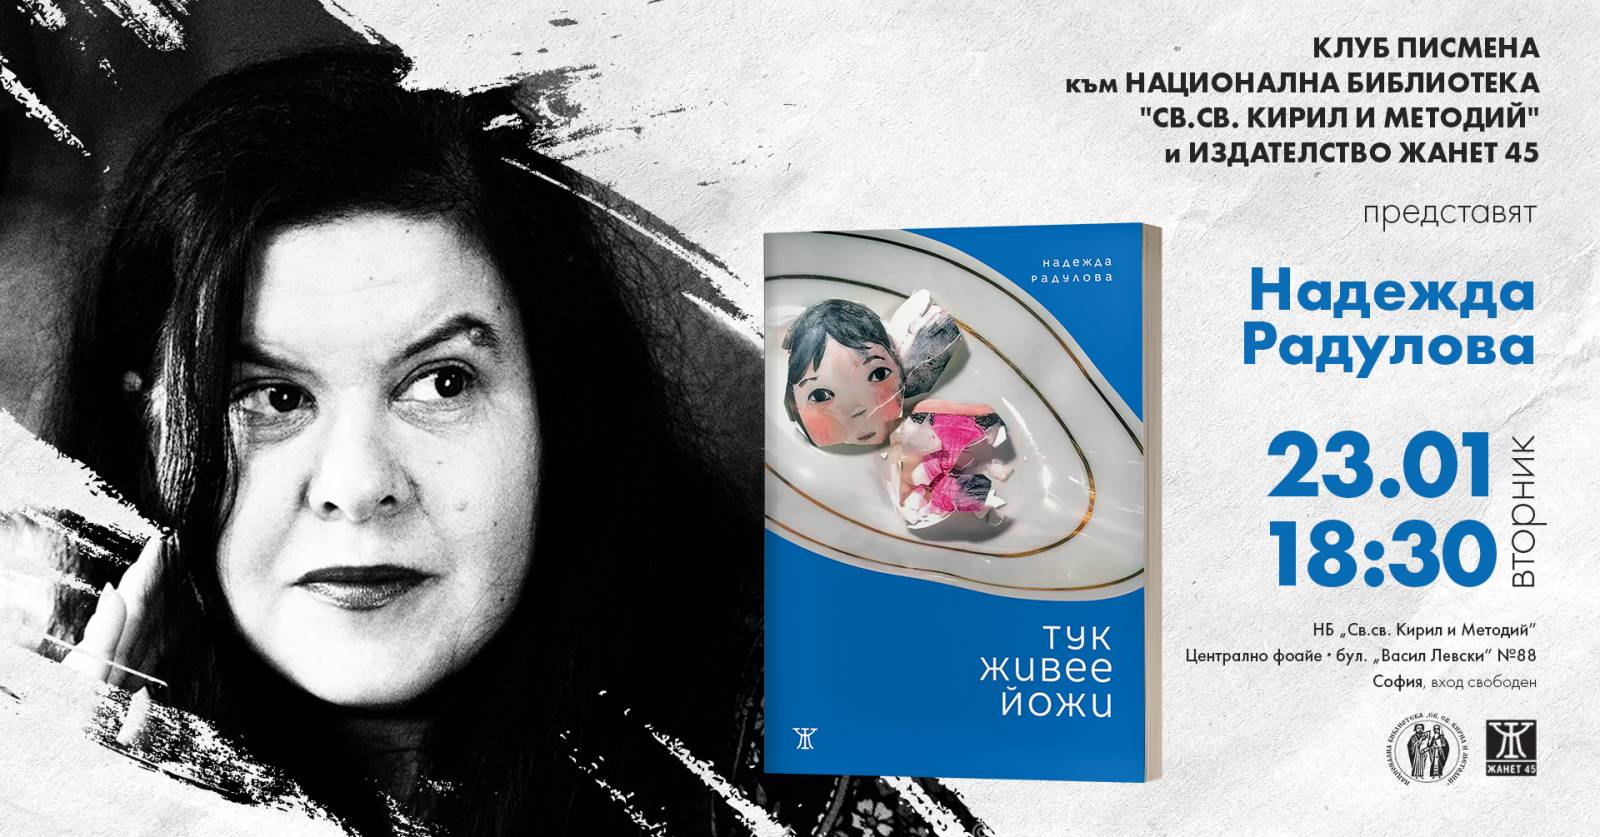 Надежда Радулова представя сборника с разкази "Тук живее Йожи"